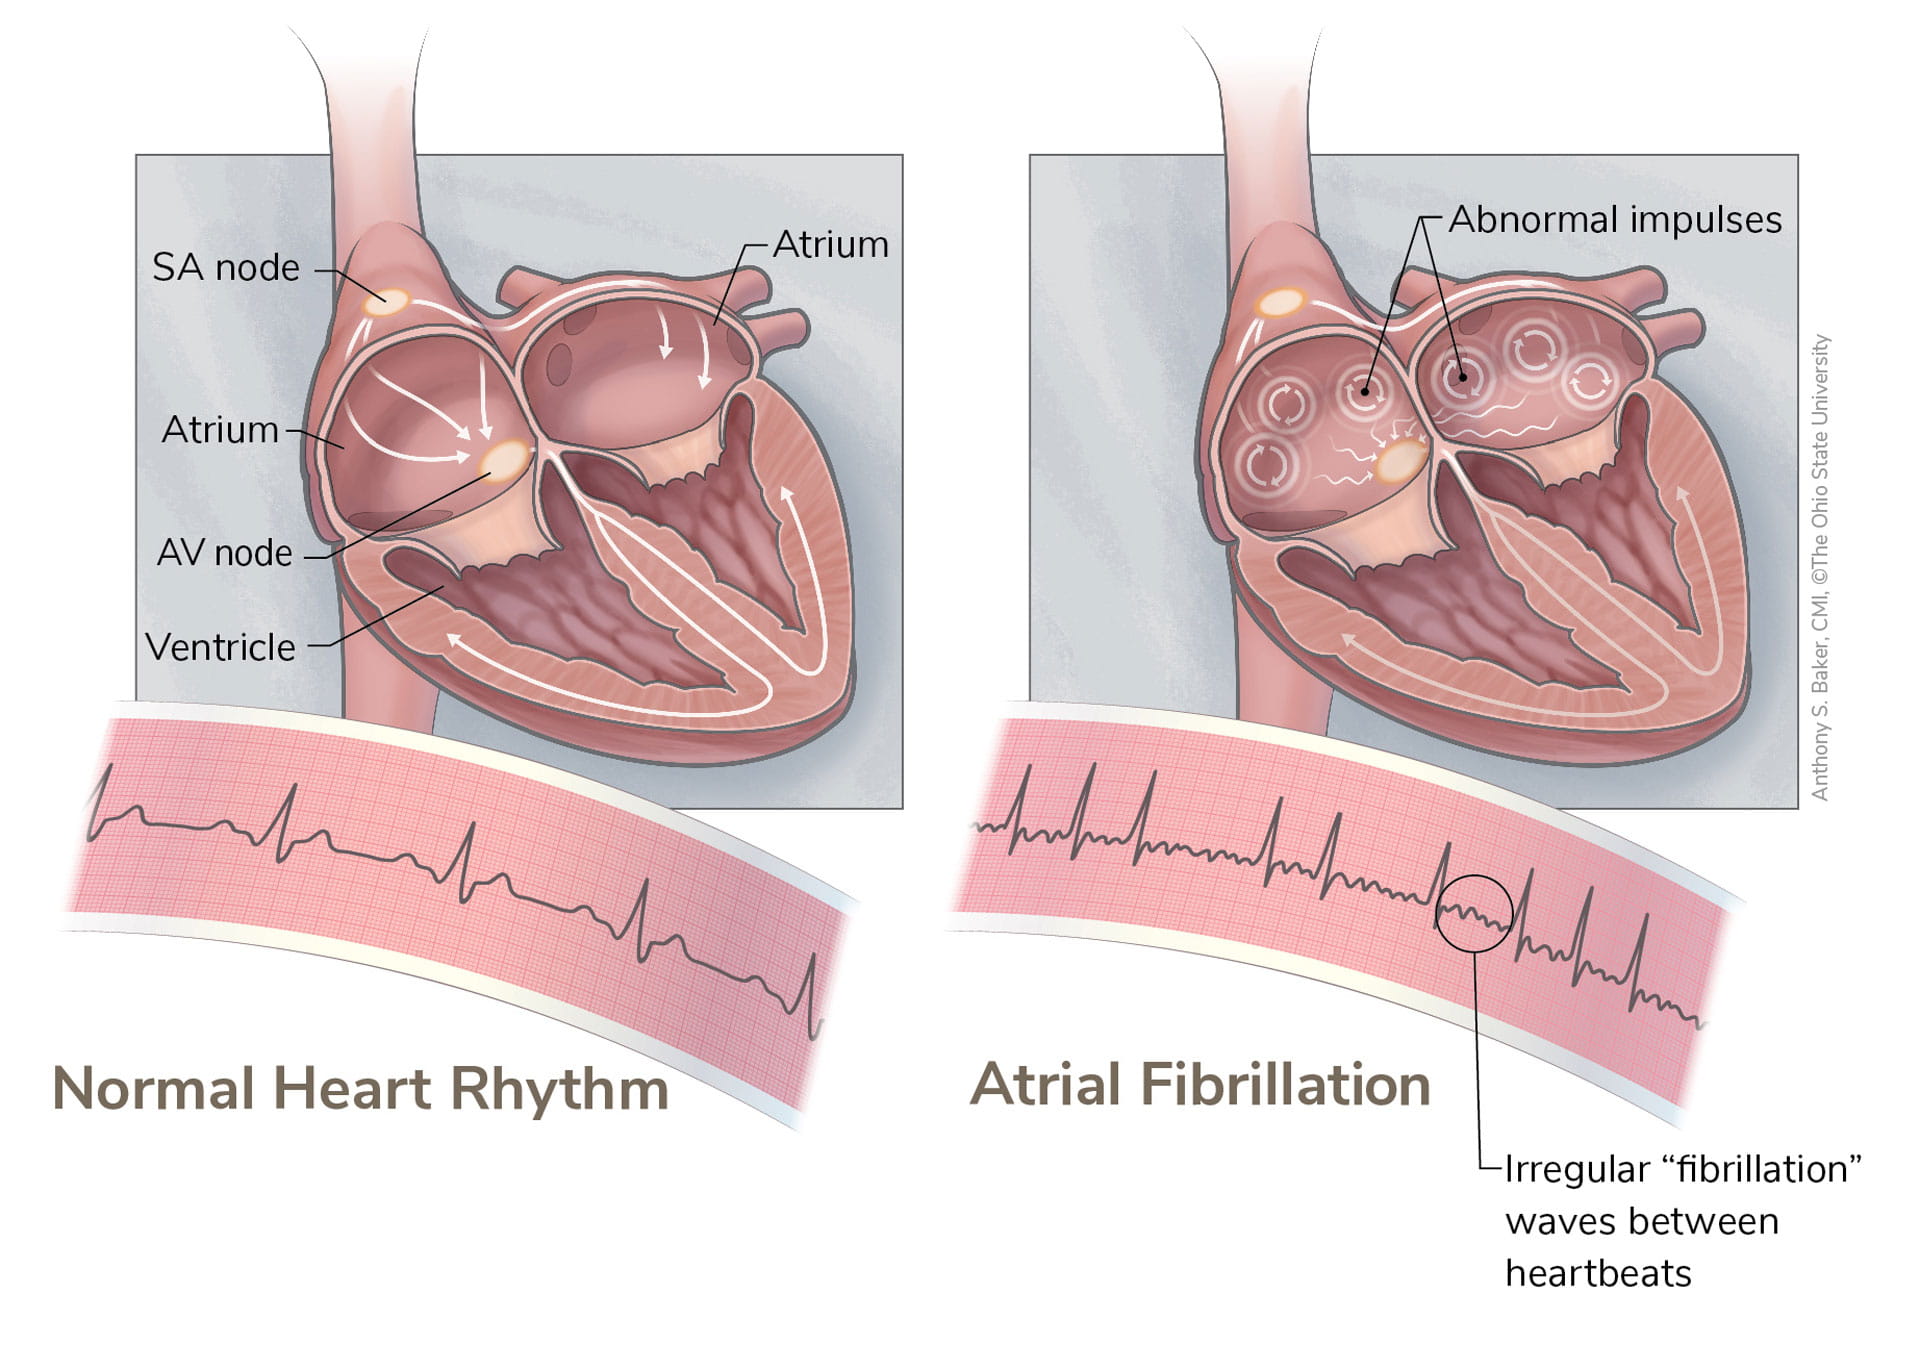 A diagram of a normal heart rhythm next to an irregular heart rhythm with "fibrillation" waves between heart beats